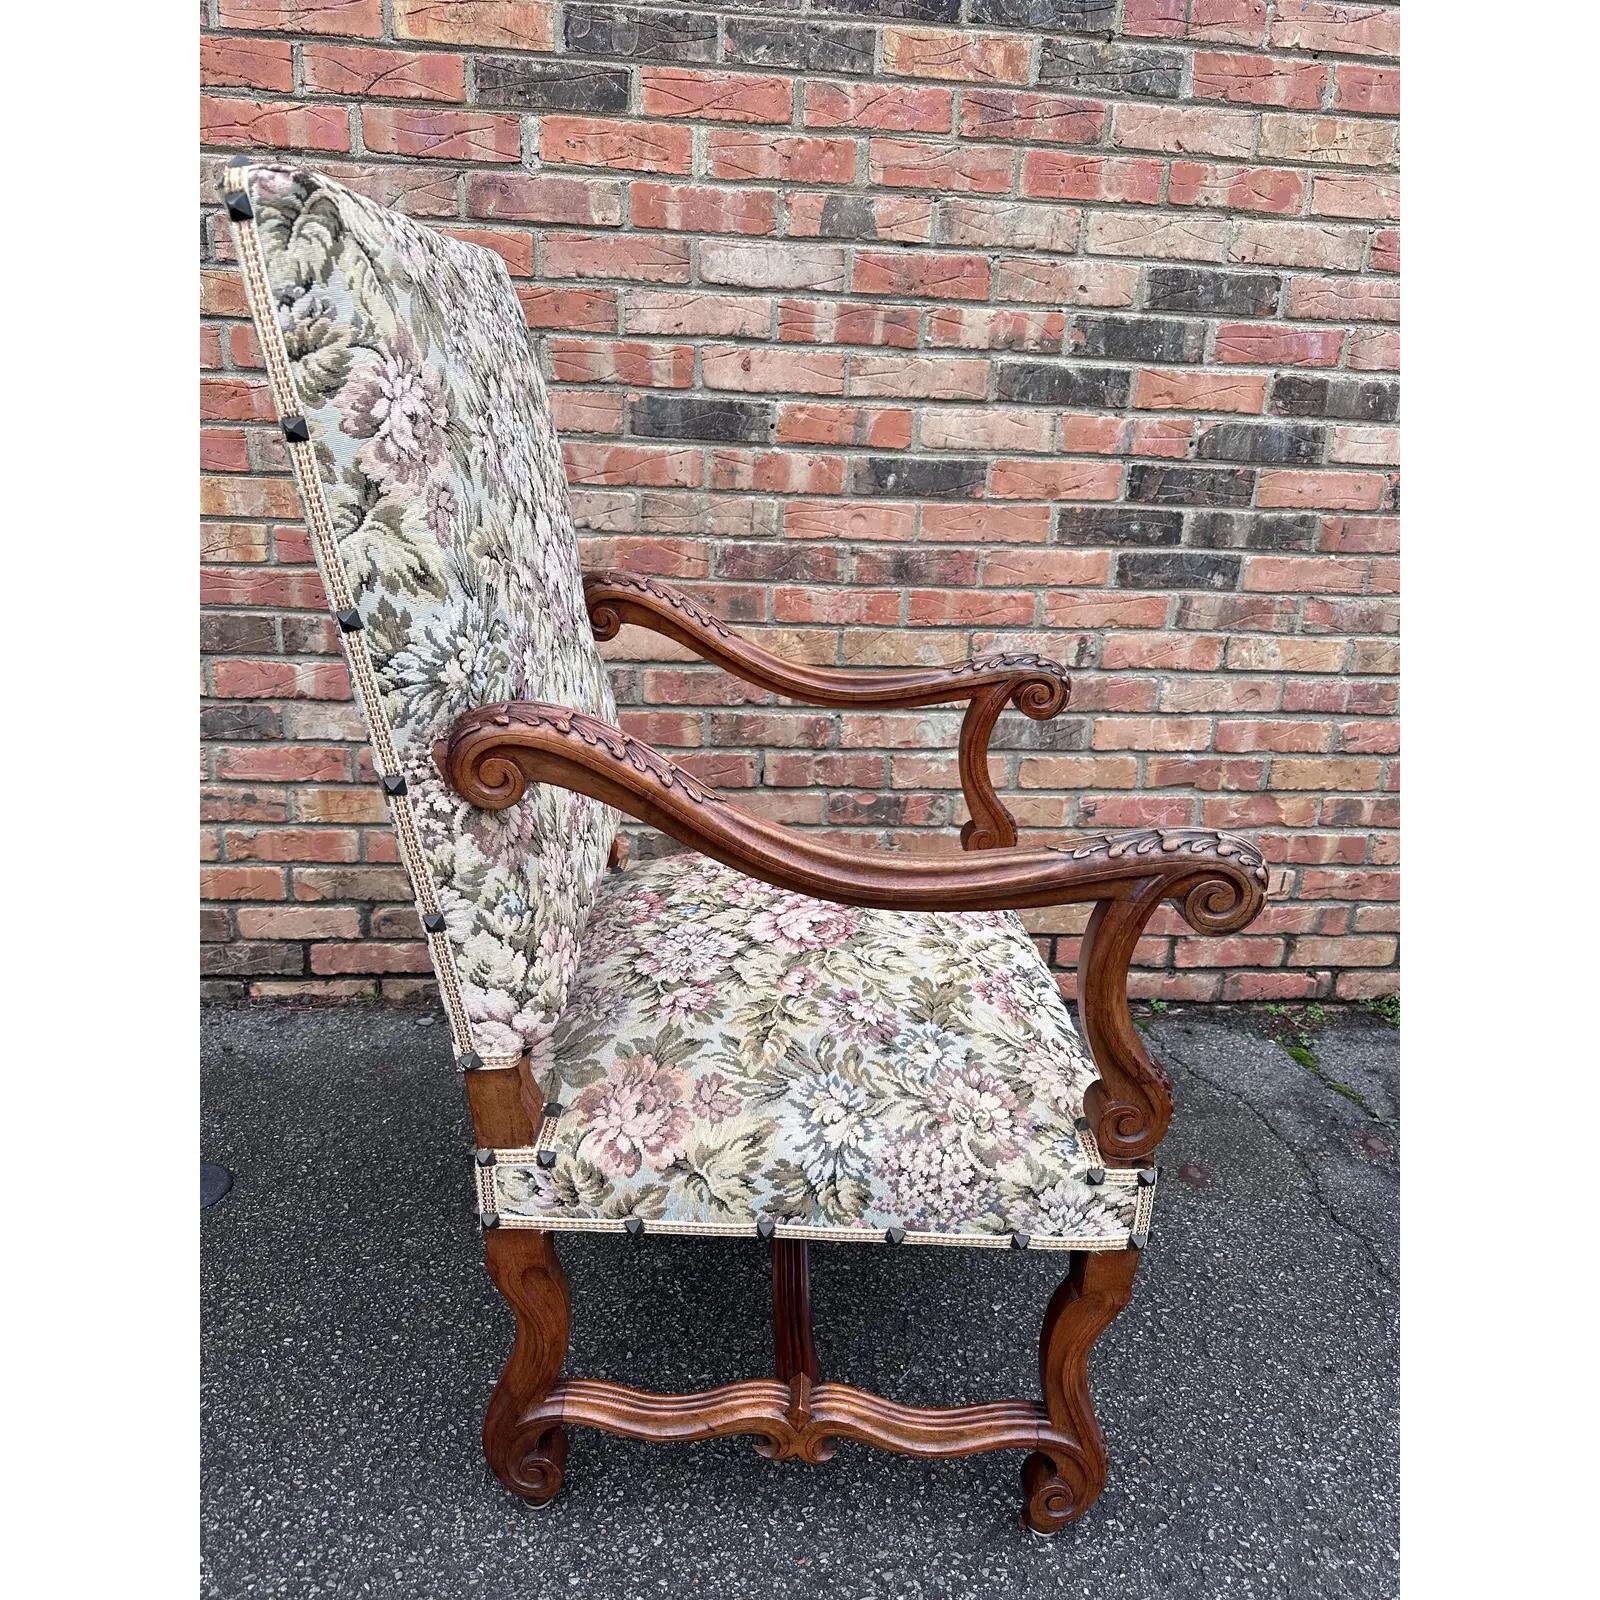 Il s'agit d'une magnifique chaise à aiguilles ancienne ! Elles ont été ornées de teintes vertes et roses douces qui s'accordent à merveille avec la richesse du bois. Les bras et les jambes présentent de superbes motifs sculptés à la main qui